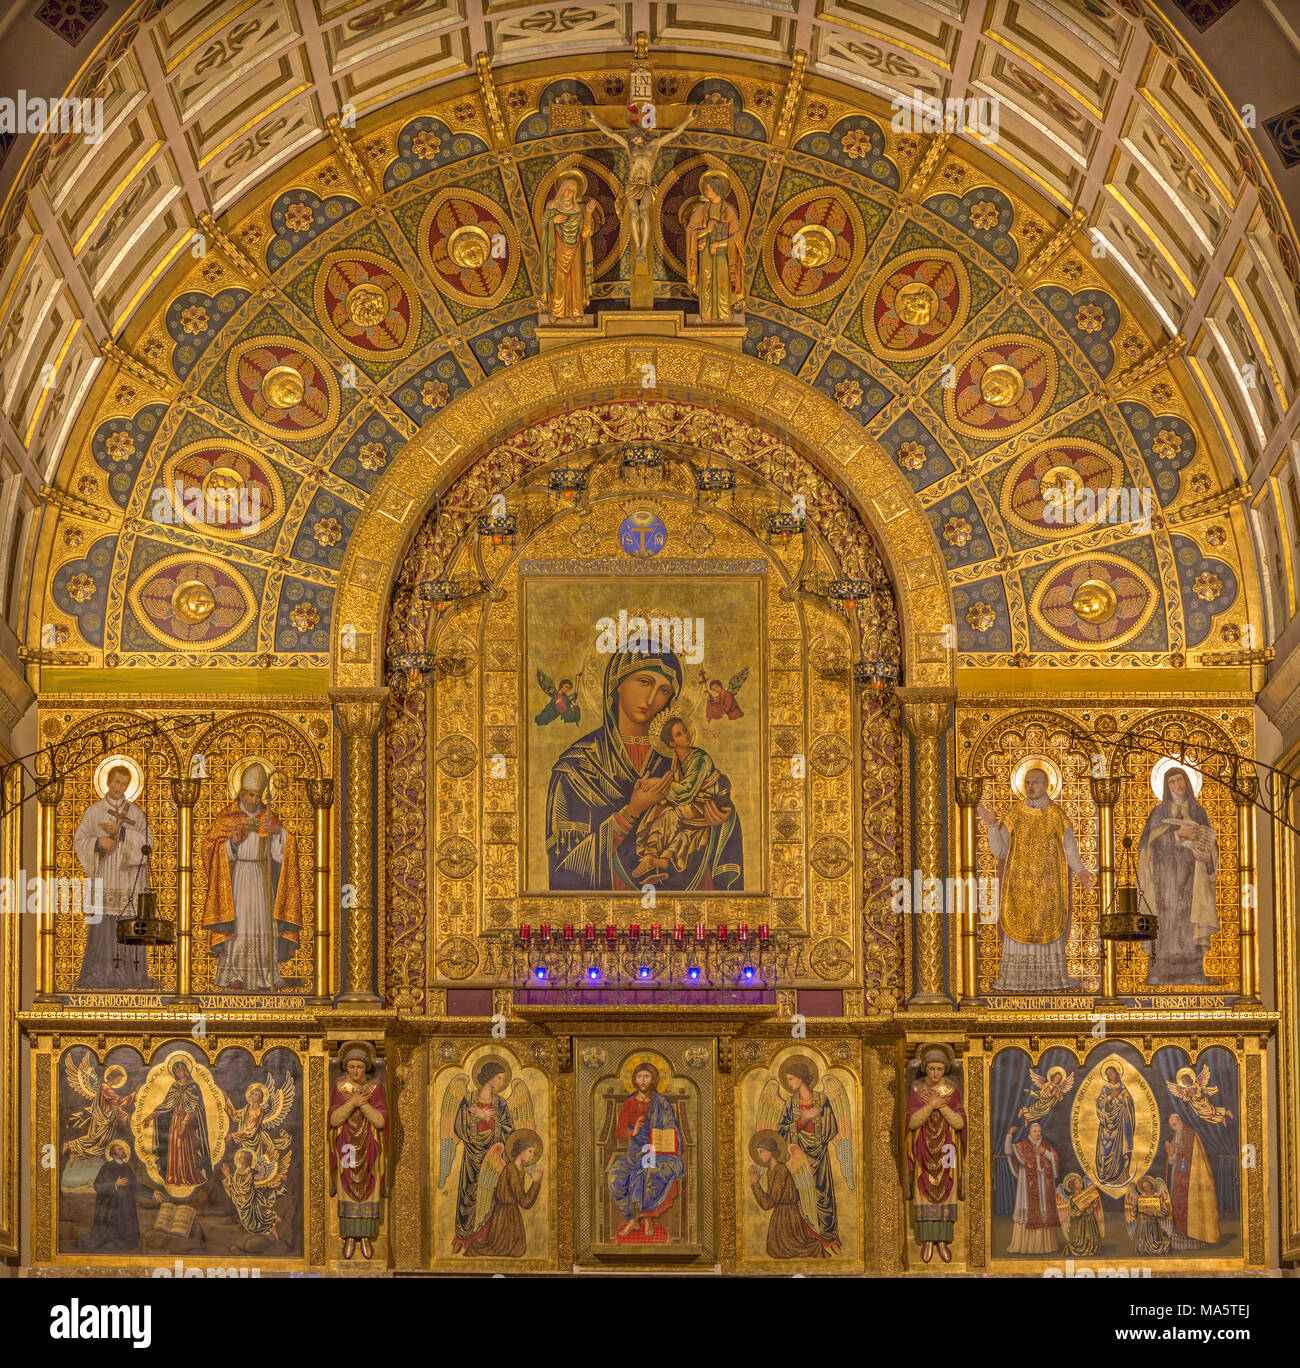 ZARAGOZA, Spanien - 1. MÄRZ 2018: Der Hauptaltar in der Kirche Iglesia del Perpetuo Socorro mit Gemälden von Pater Jesus Faus (1953 - 1959). Stockfoto